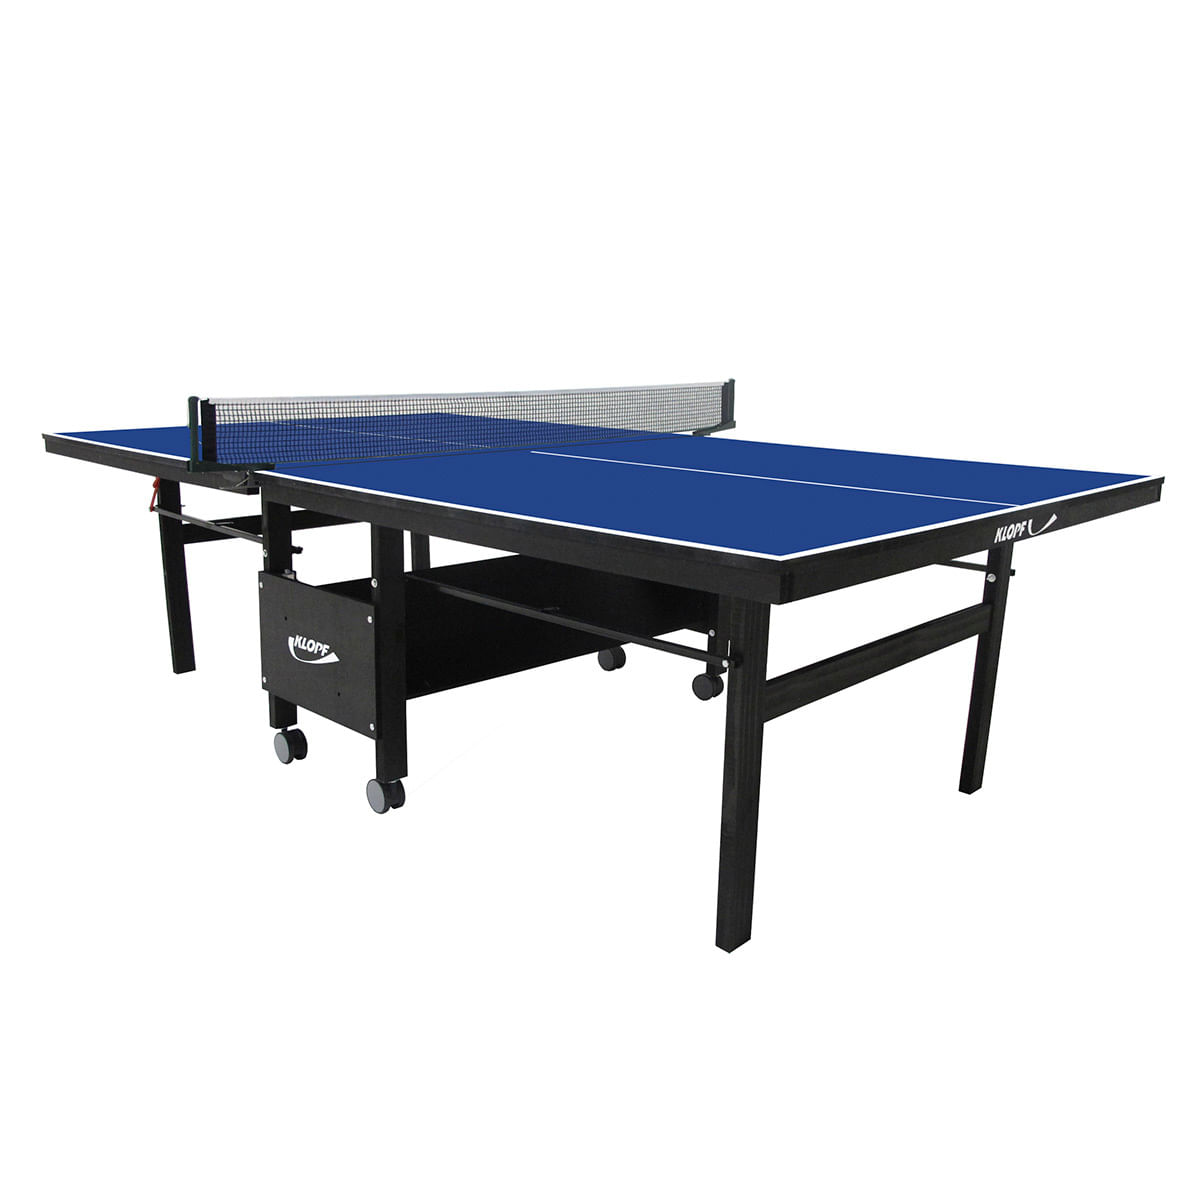 Mesa de Ping-Pong Dobrável Klopf, Com Rodas, MDF 18mm, Azul - 1084